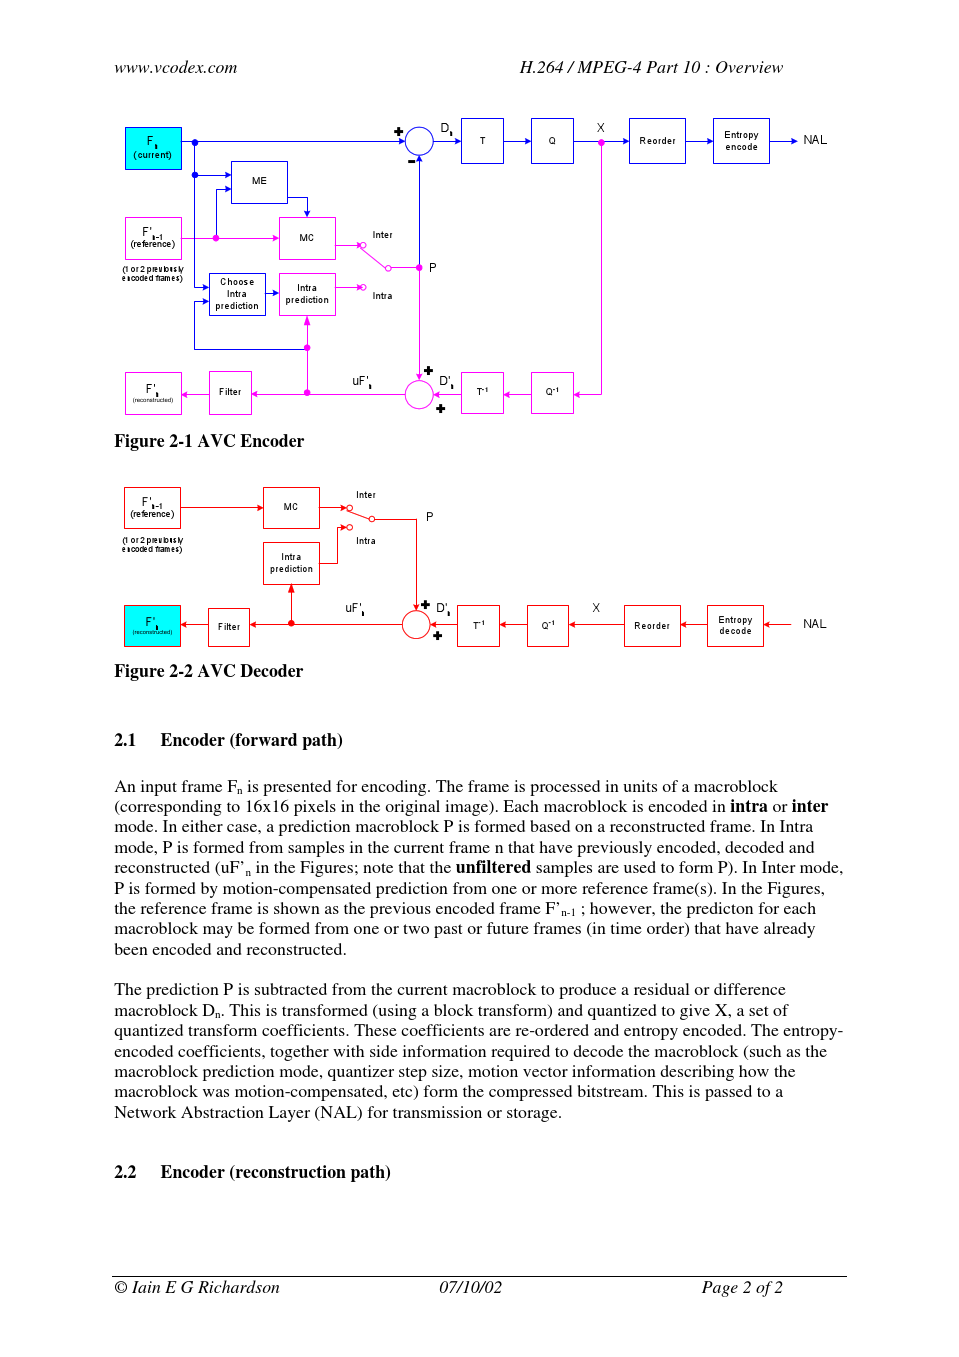 H[1].264_MPEG-4 Part 10 White Paper